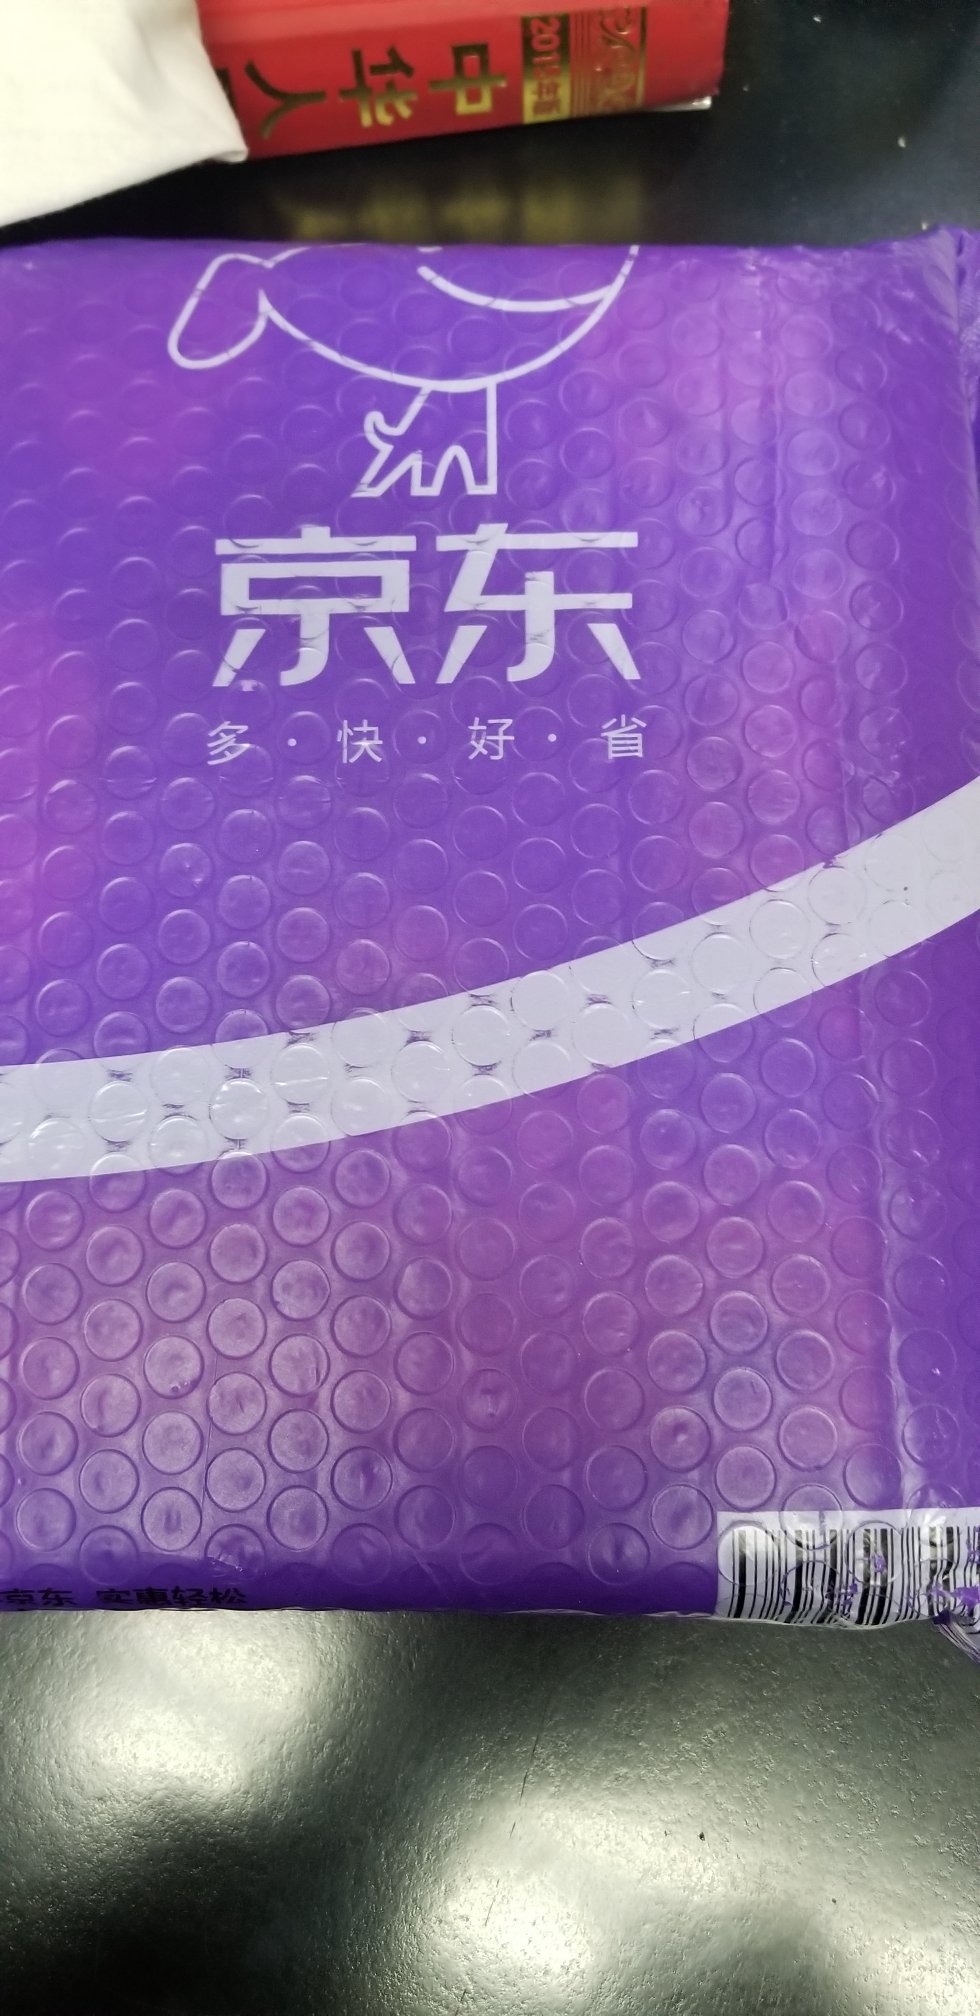 这是从北京寄过来的，外面袋子自带气泡，包装比上海的好多了。是因为靠的近么